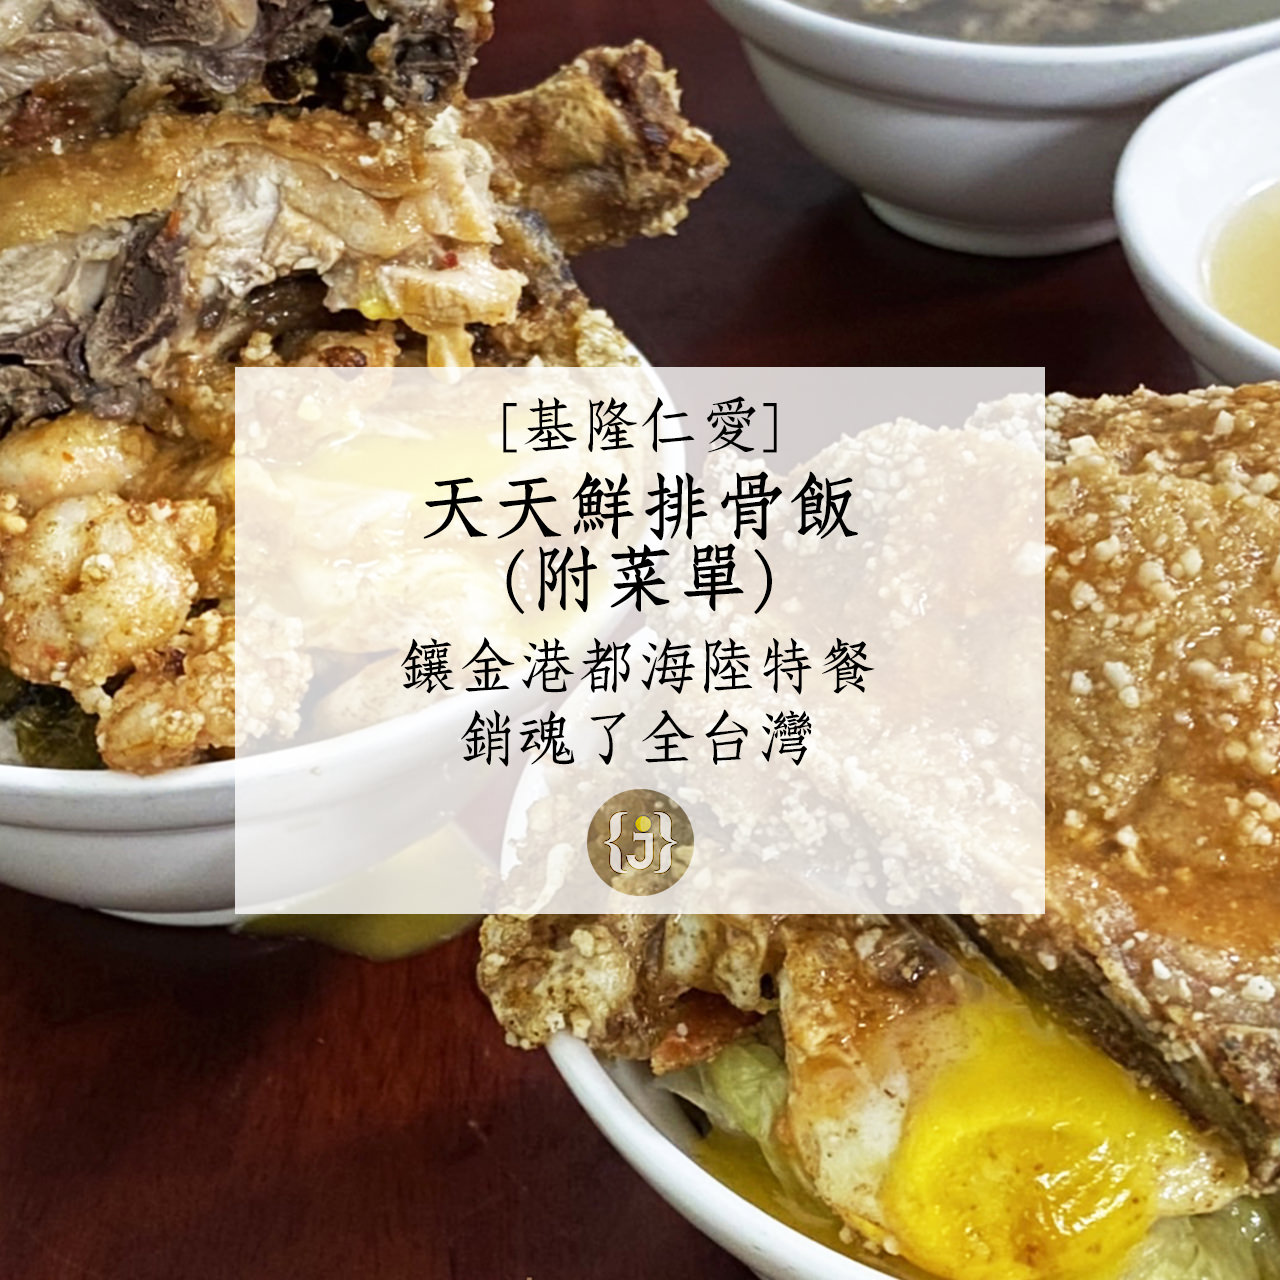 【基隆仁愛】天天鮮排骨飯附菜單鑲金港都海陸特餐 銷魂了全台灣